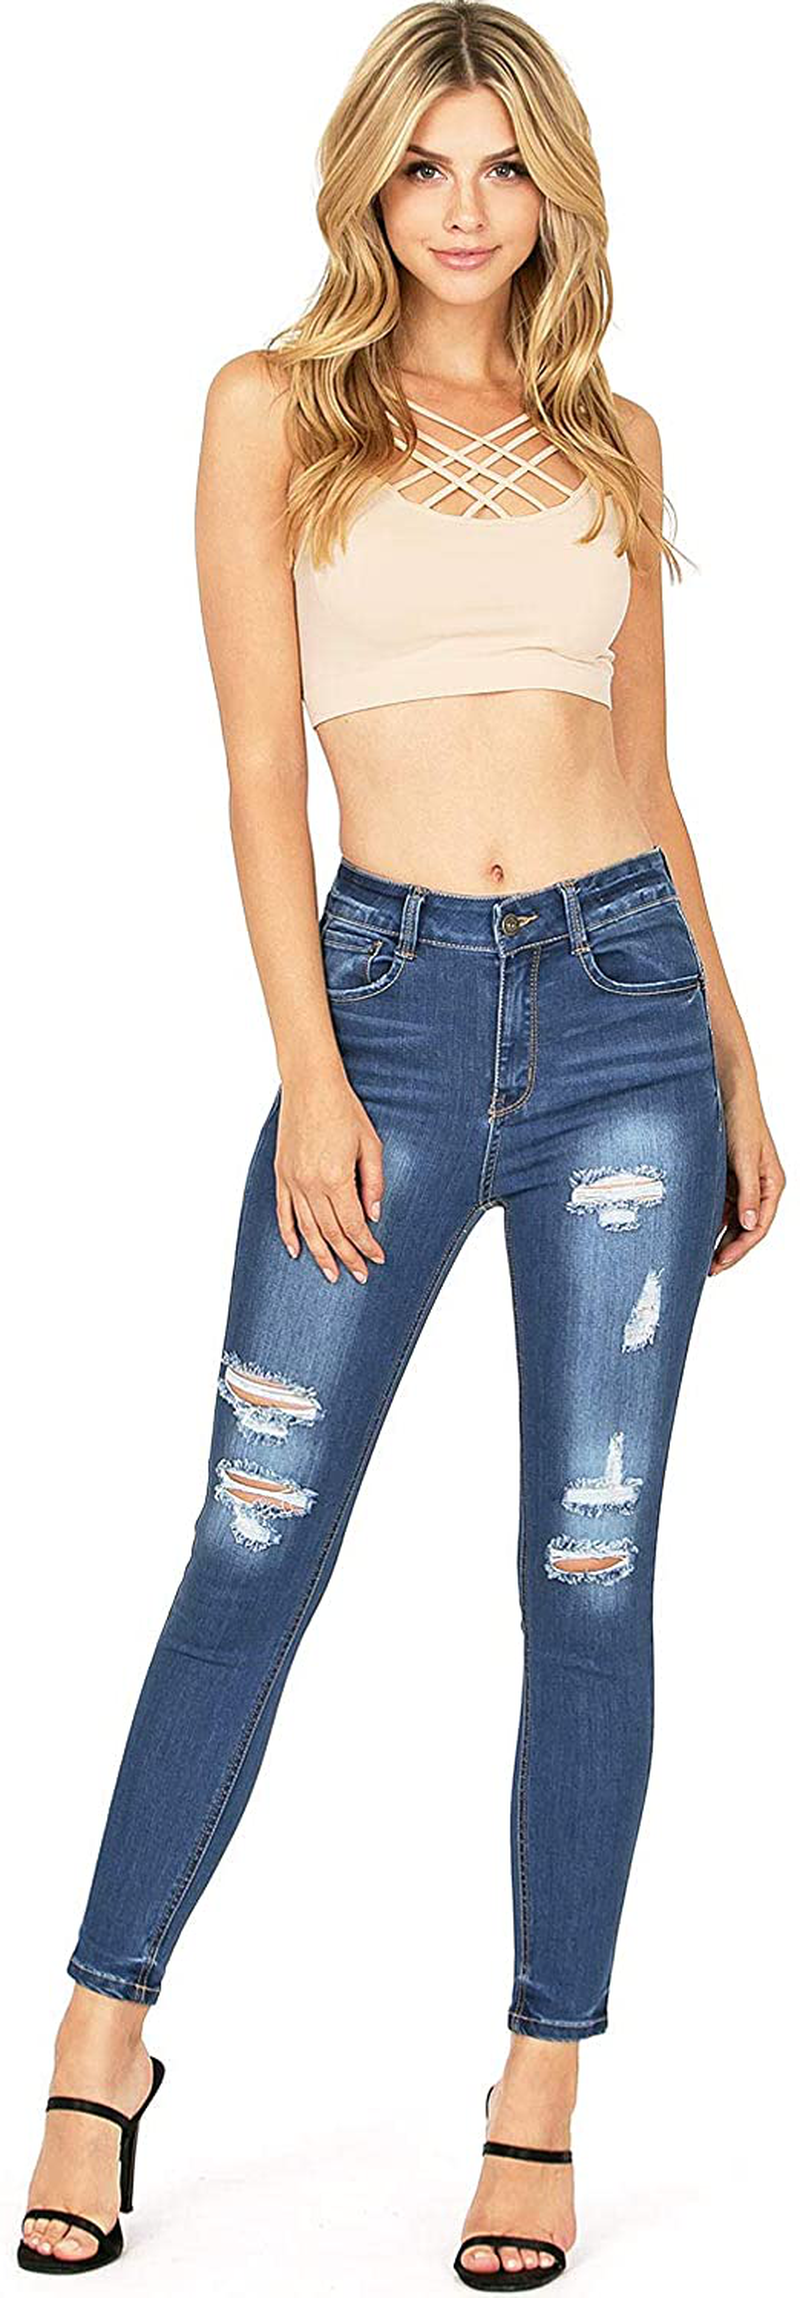 Wax Jeans Women's Juniors High Waist Light Distressing Skinny Jeans